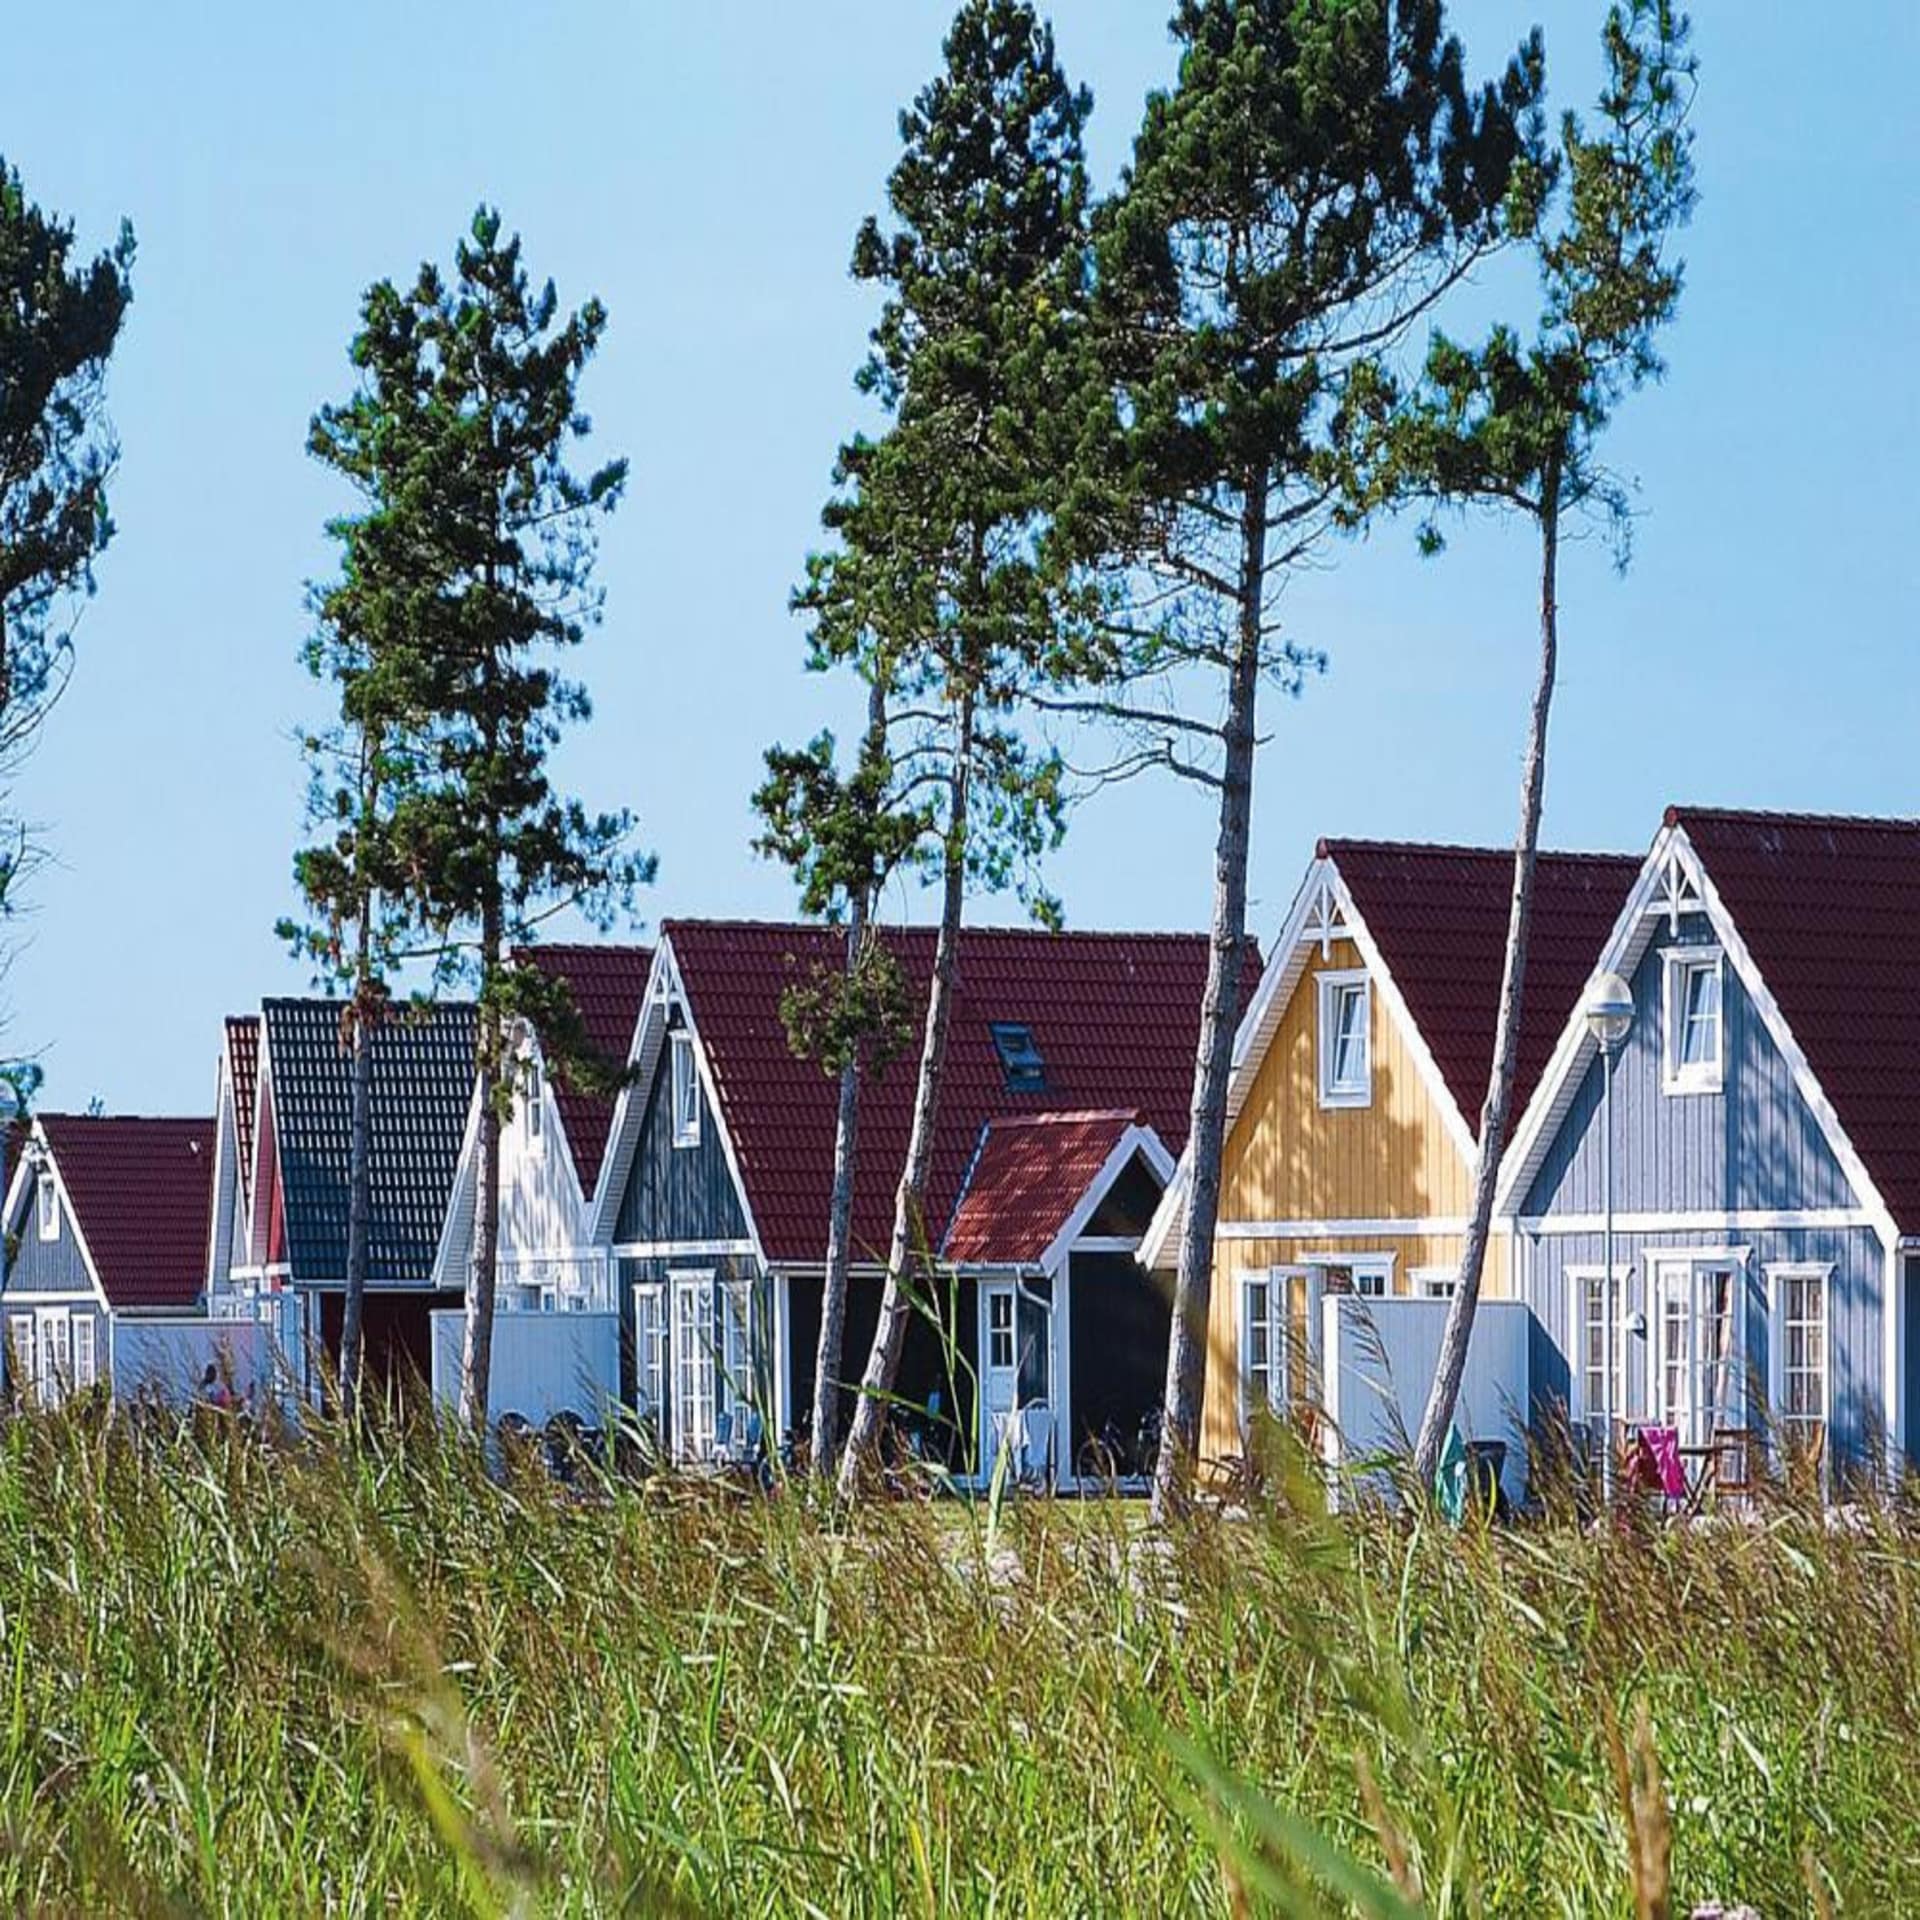 Ferienpark in Dänemark mit bunten skandinavischen Holzhäusern.